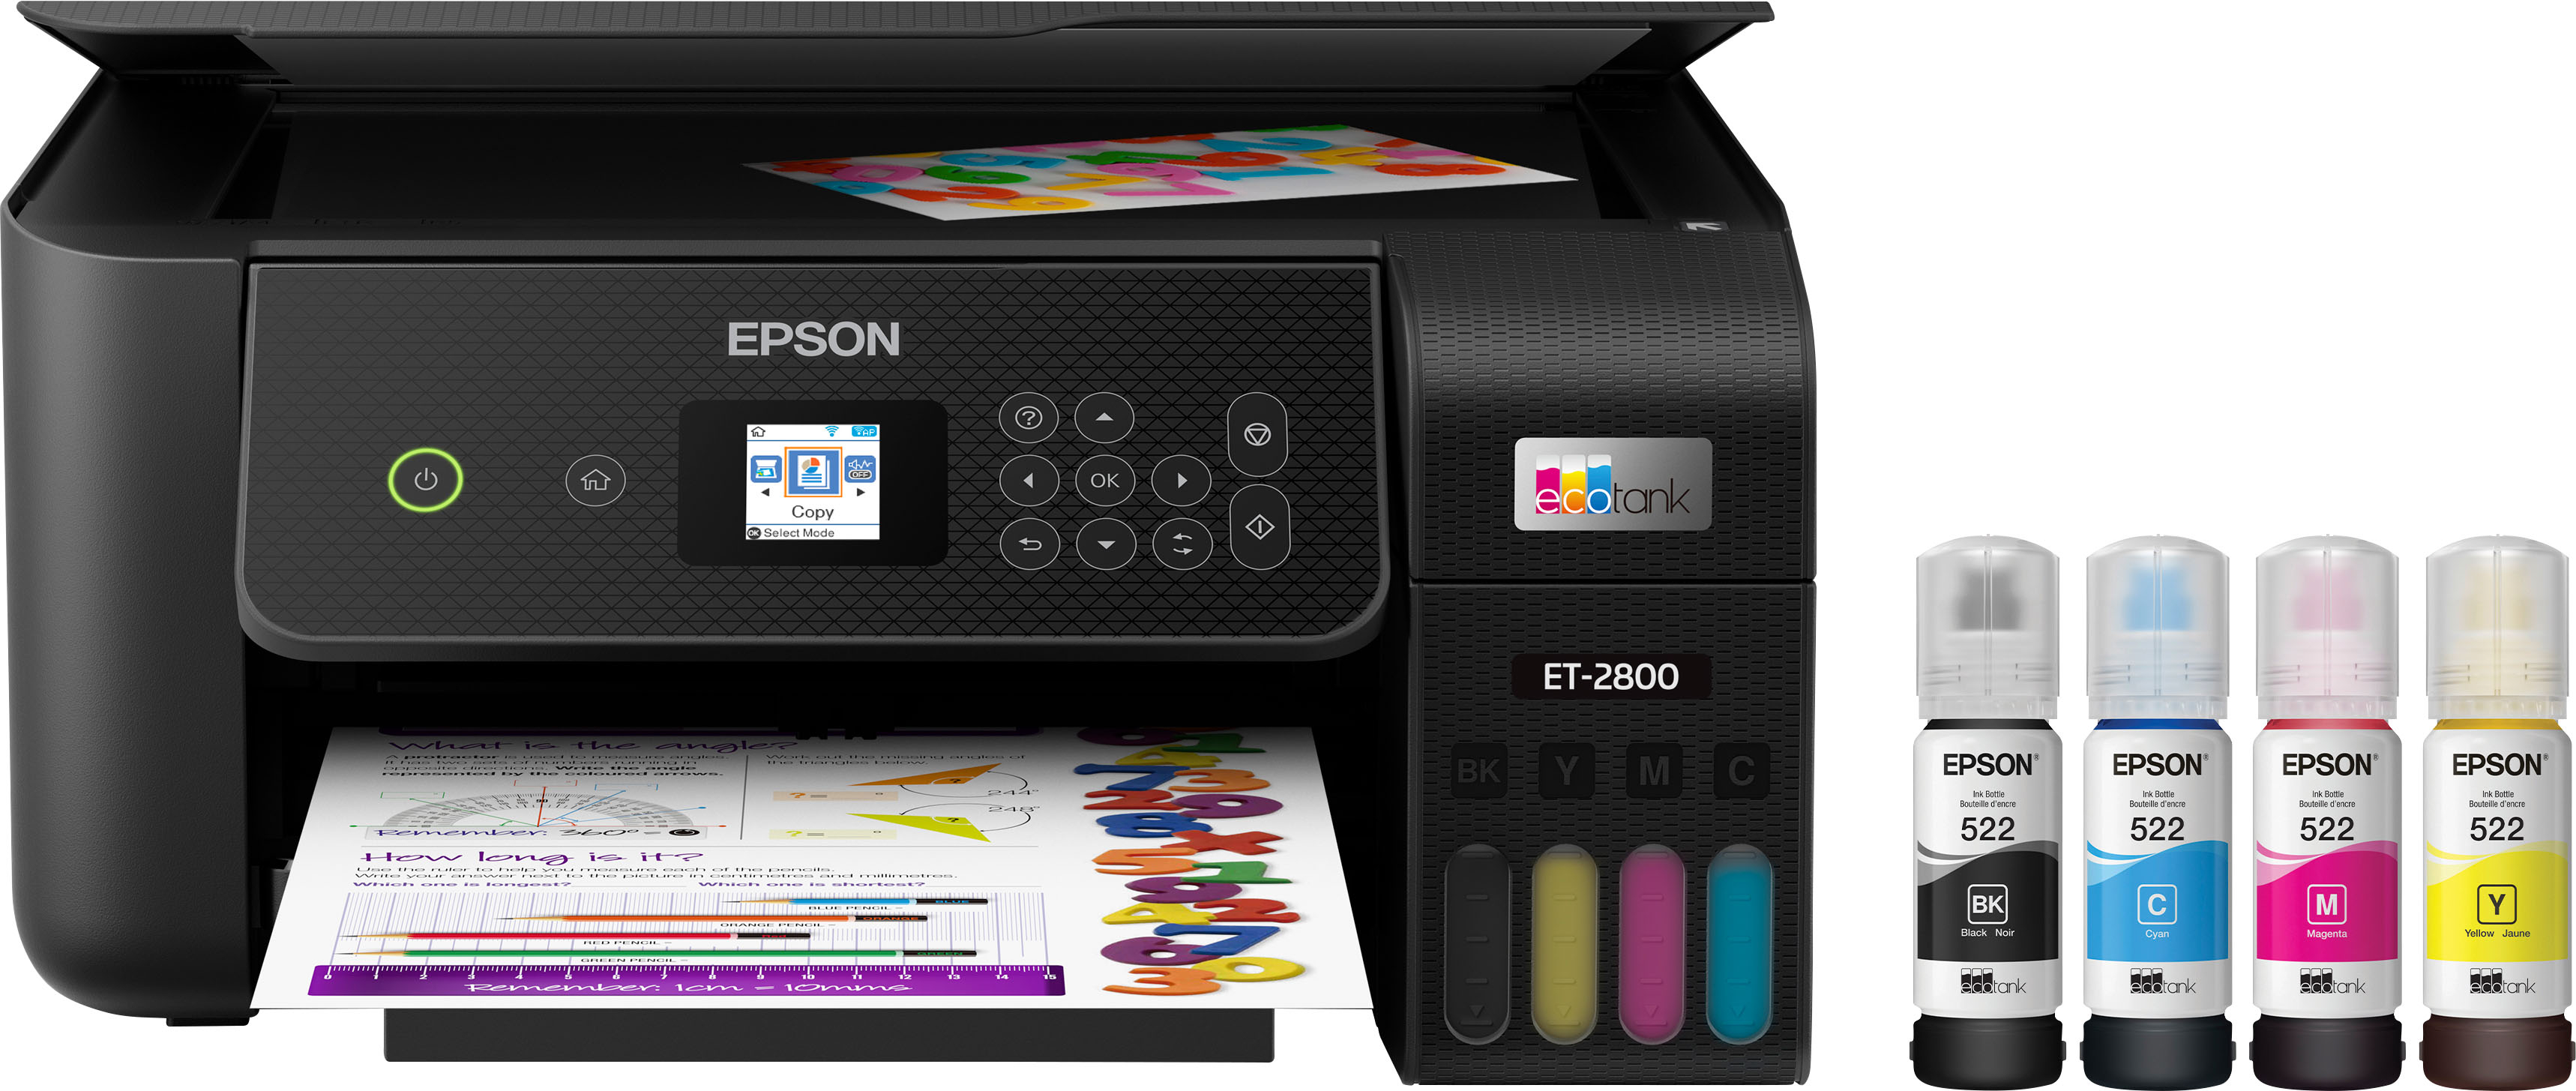 Epson EcoTank ET-2800 All-In-One Wireless Color Inkjet Printer - Black